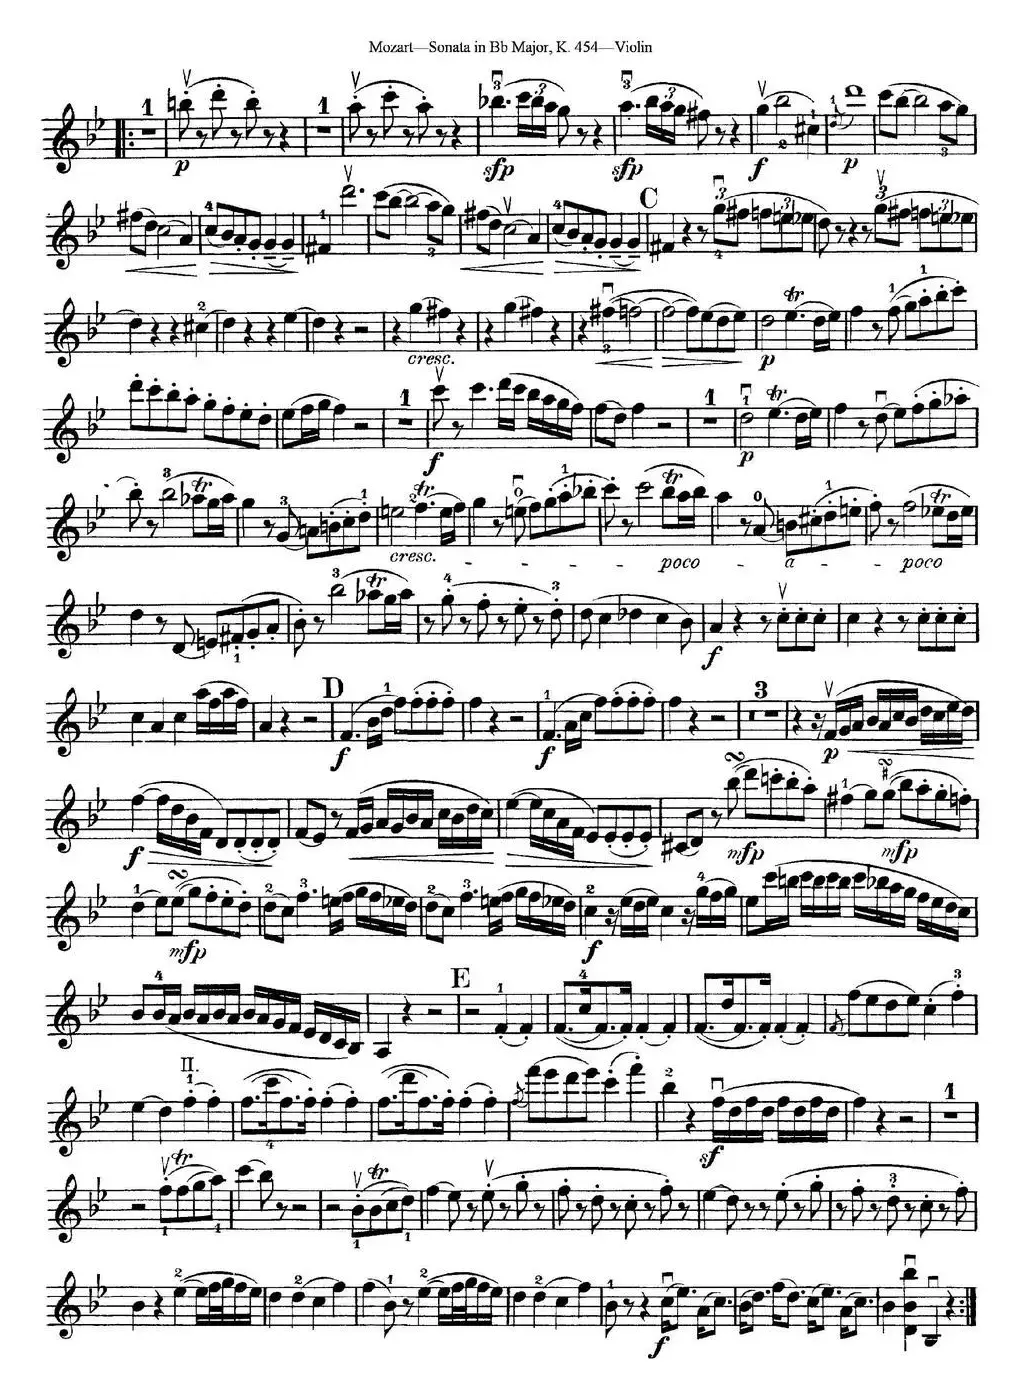 Violin Sonata in Bb Major K.454